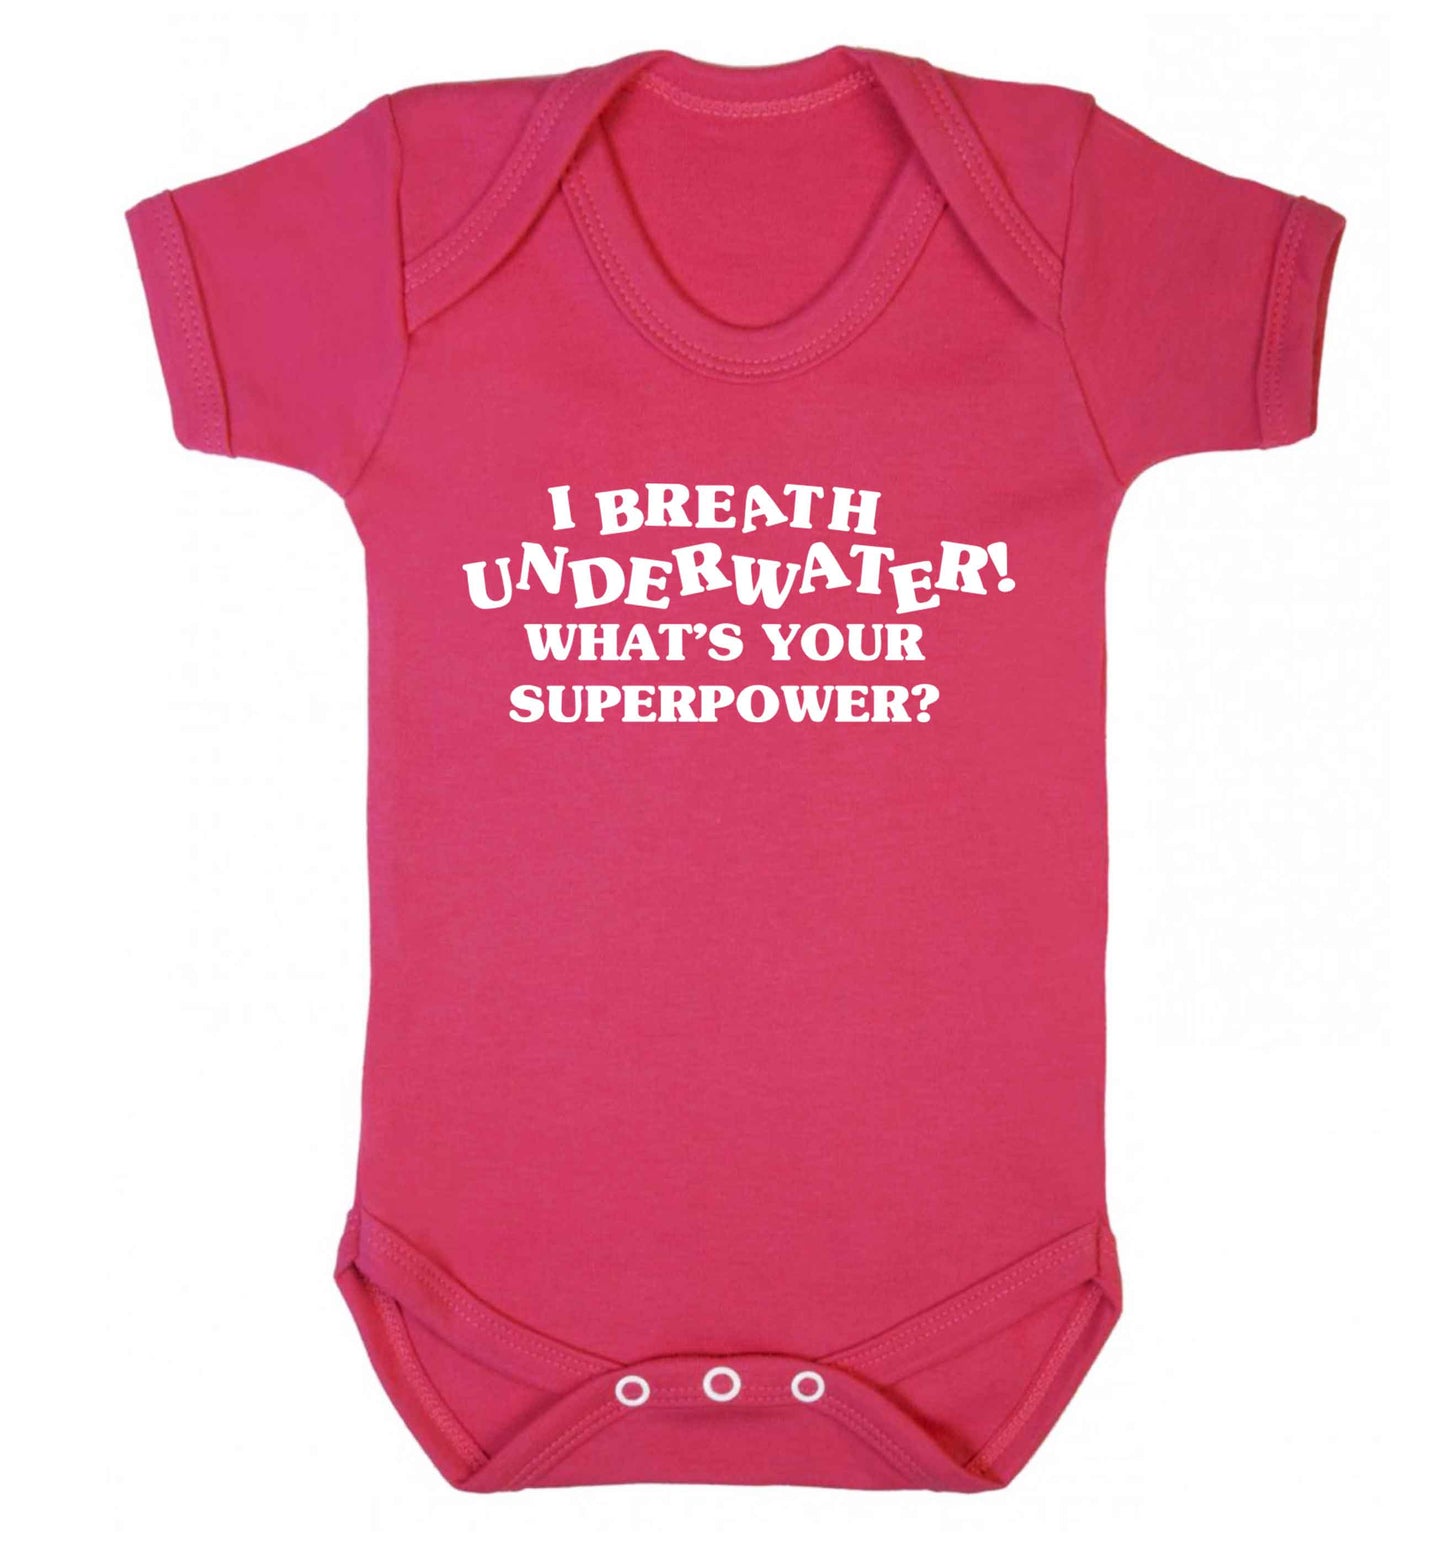 I breath underwater what's your superpower? Baby Vest dark pink 18-24 months